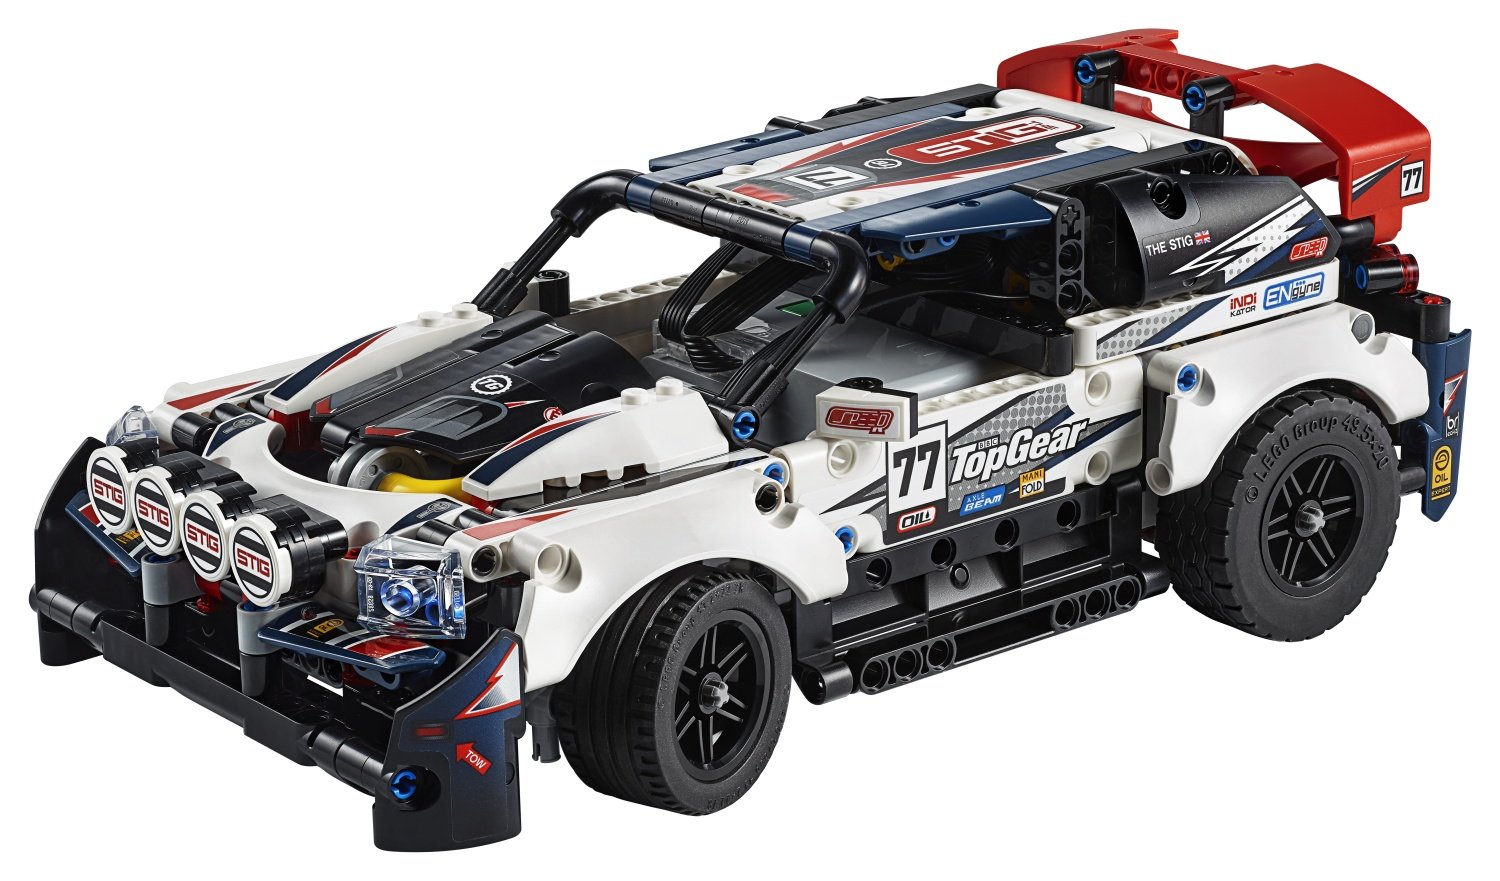 Конструктор LEGO Technic «Гоночный автомобиль Top Gear» 42109 / 463 детали